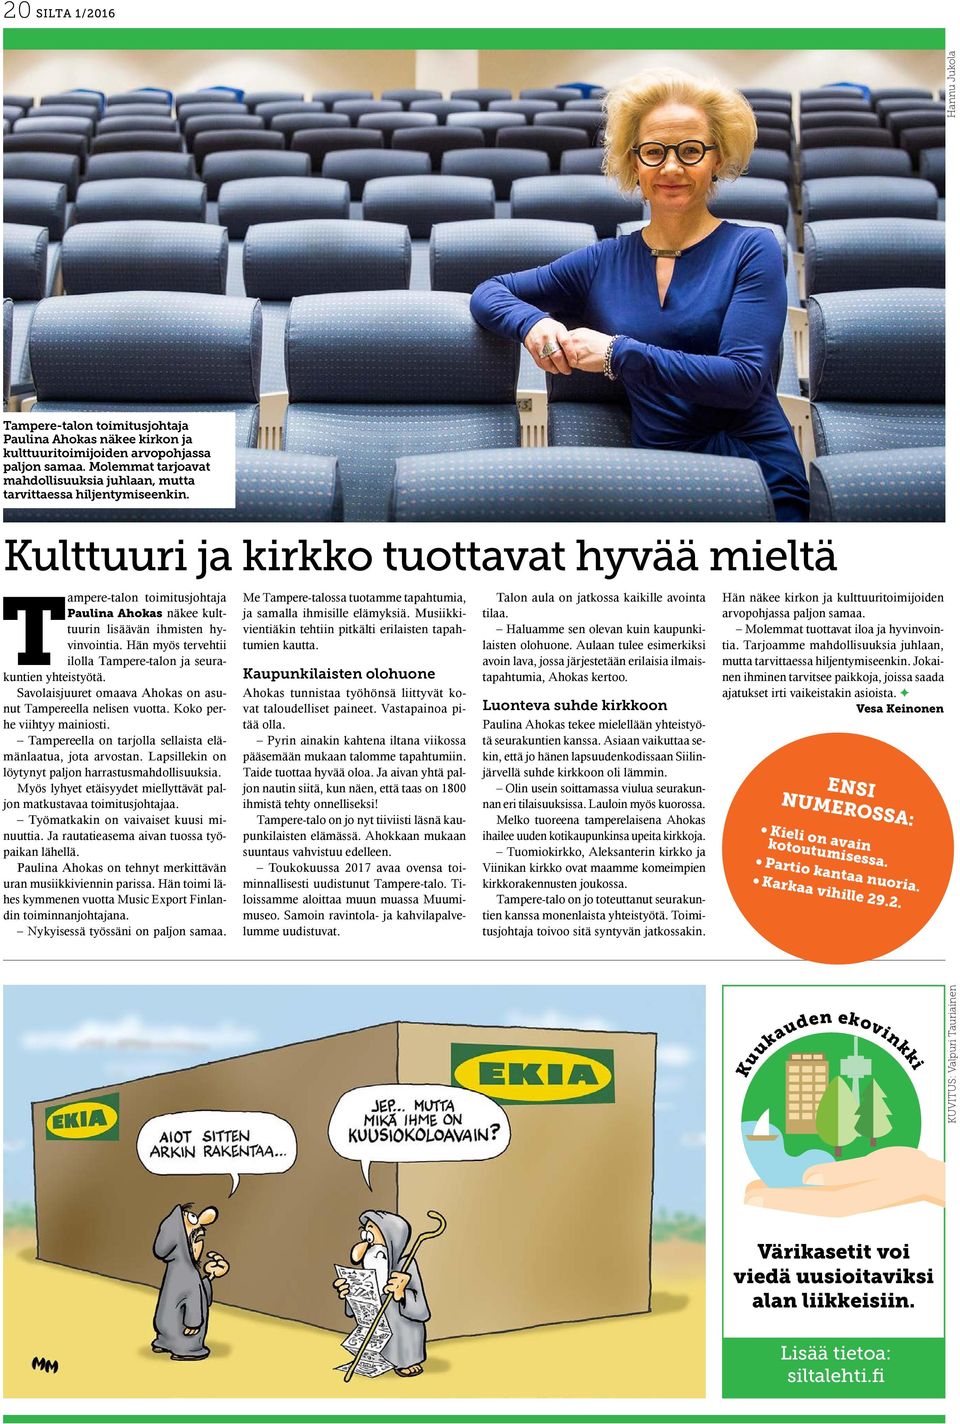 Kulttuuri ja kirkko tuottavat hyvää mieltä Tampere-talon toimitusjohtaja Paulina Ahokas näkee kulttuurin lisäävän ihmisten hyvinvointia.